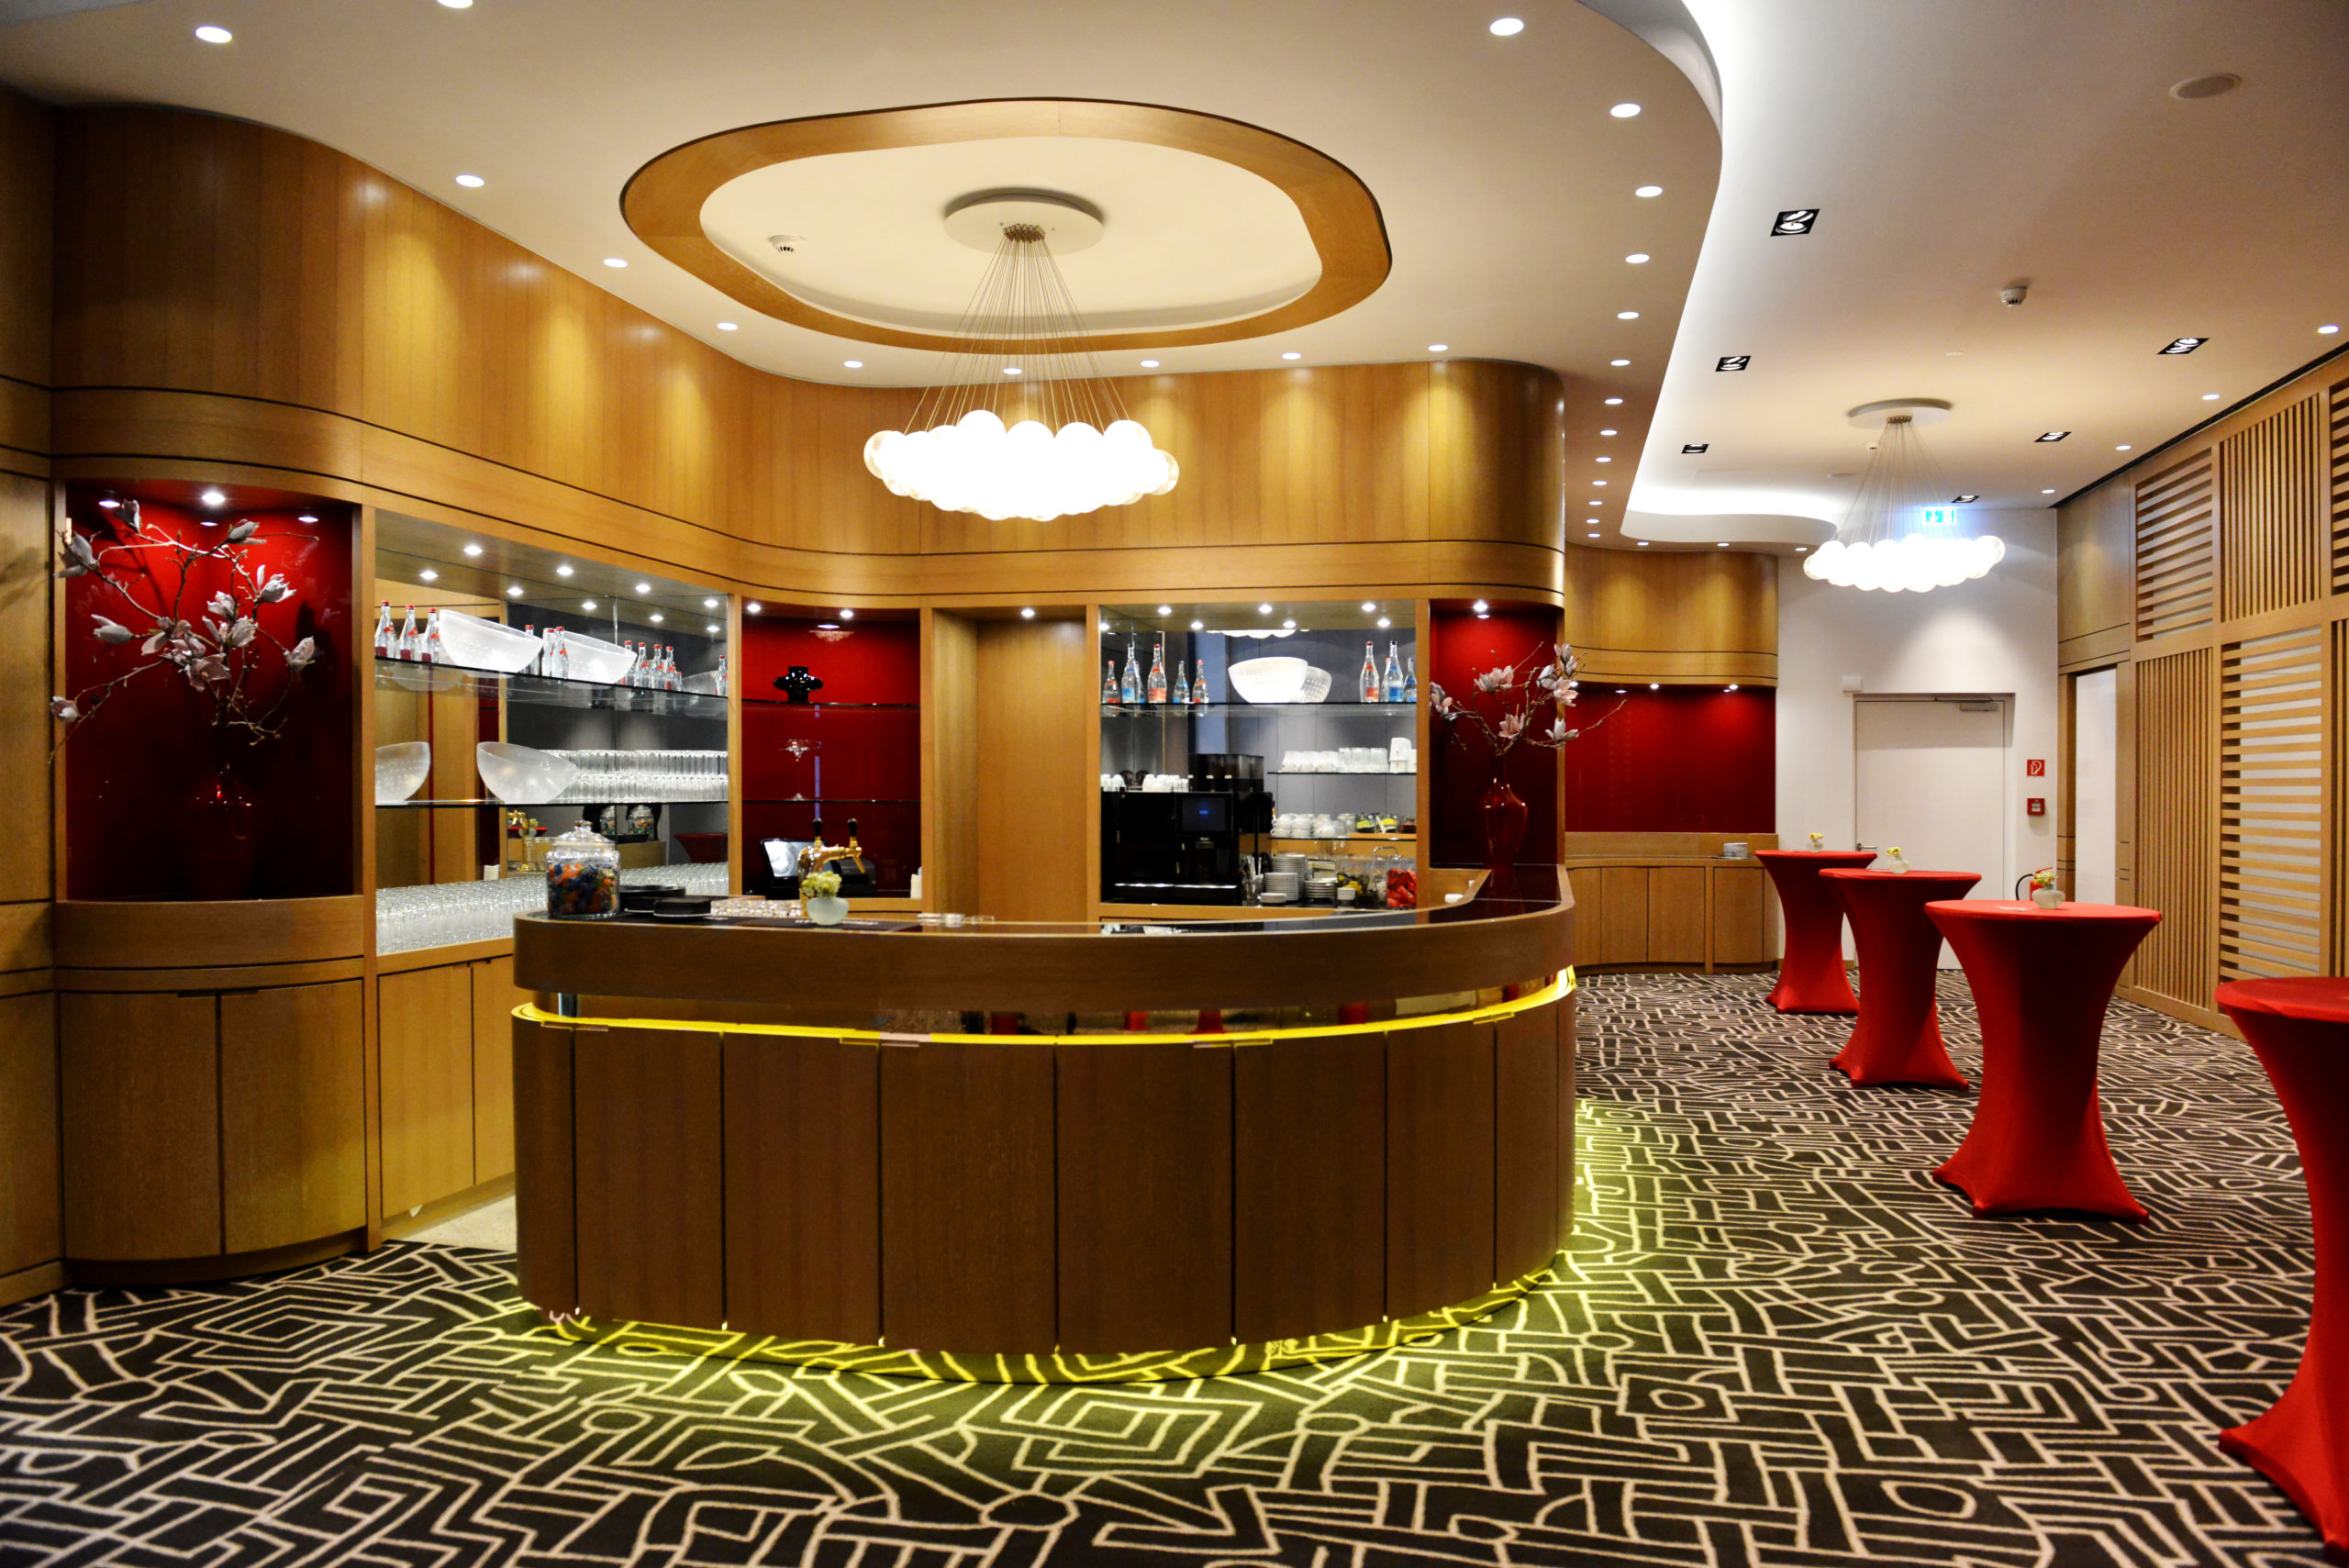 Abbildung Lobby mit gold roten Akzenten und schwarz weißem Muster Boden